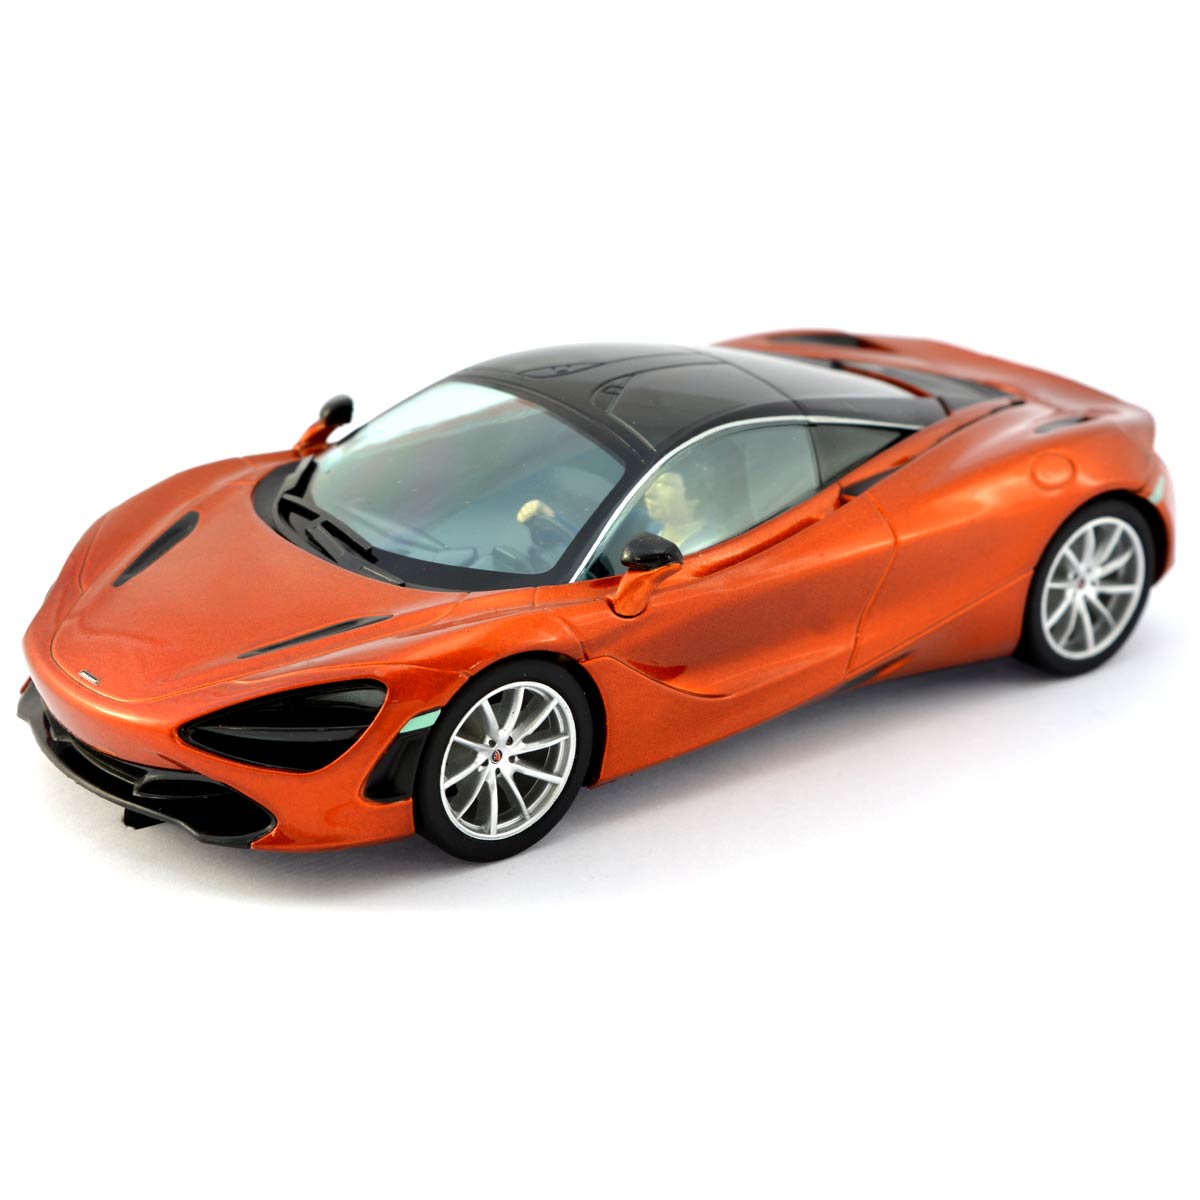 SCALEXTRIC Slot Car C3895 McLaren 720S Azores Orange 